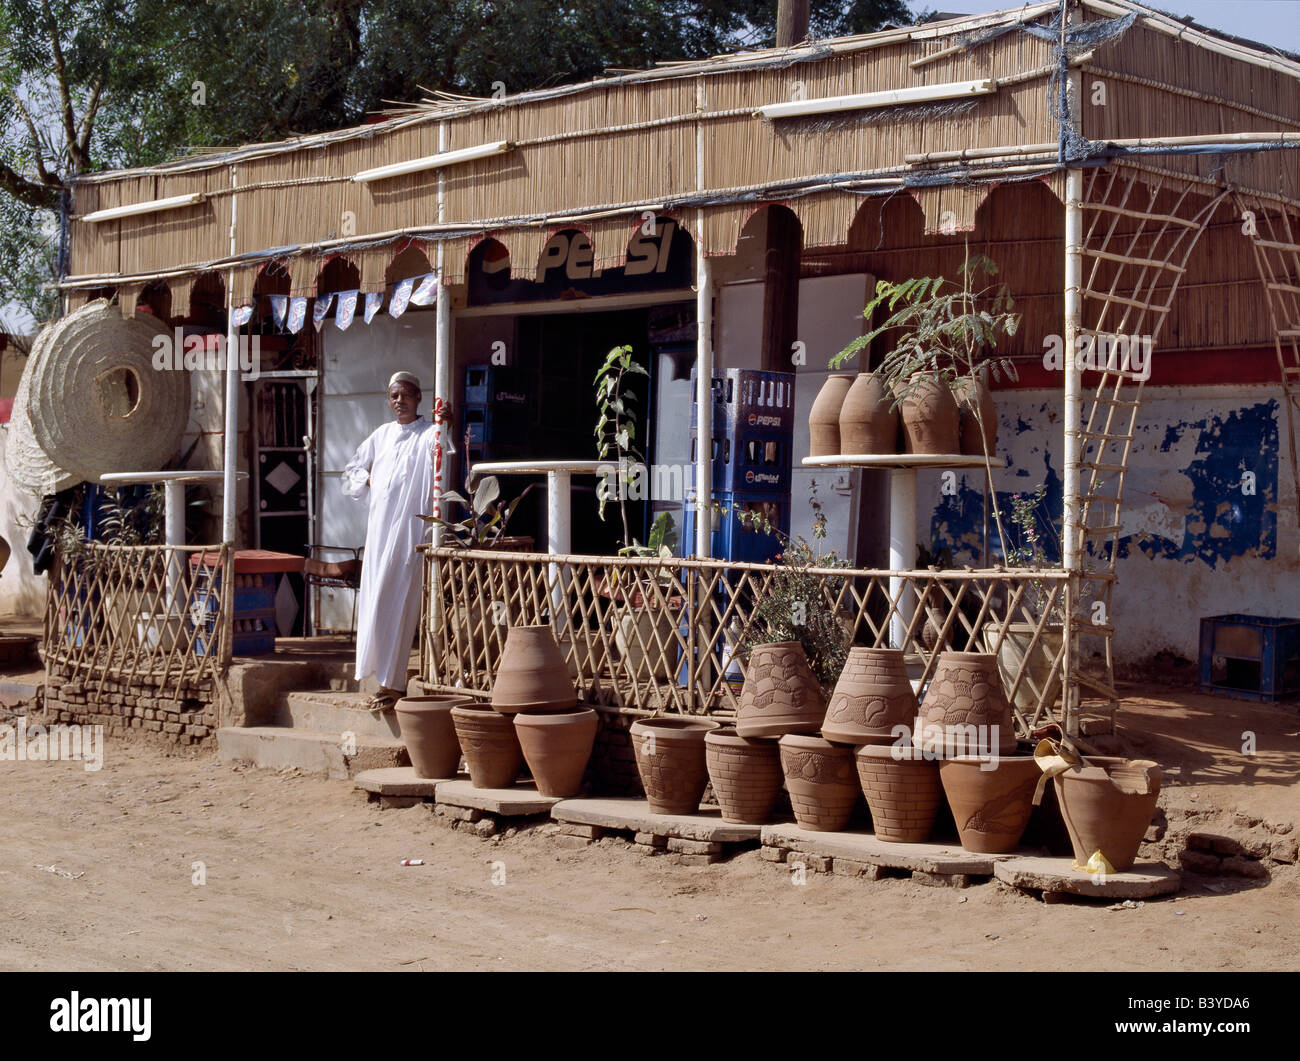 Soudan, Khartoum, Omdurman. Le propriétaire d'une boutique de la route attend les clients sur sa terrasse à côté de la marchandise soigneusement aménagées. Banque D'Images